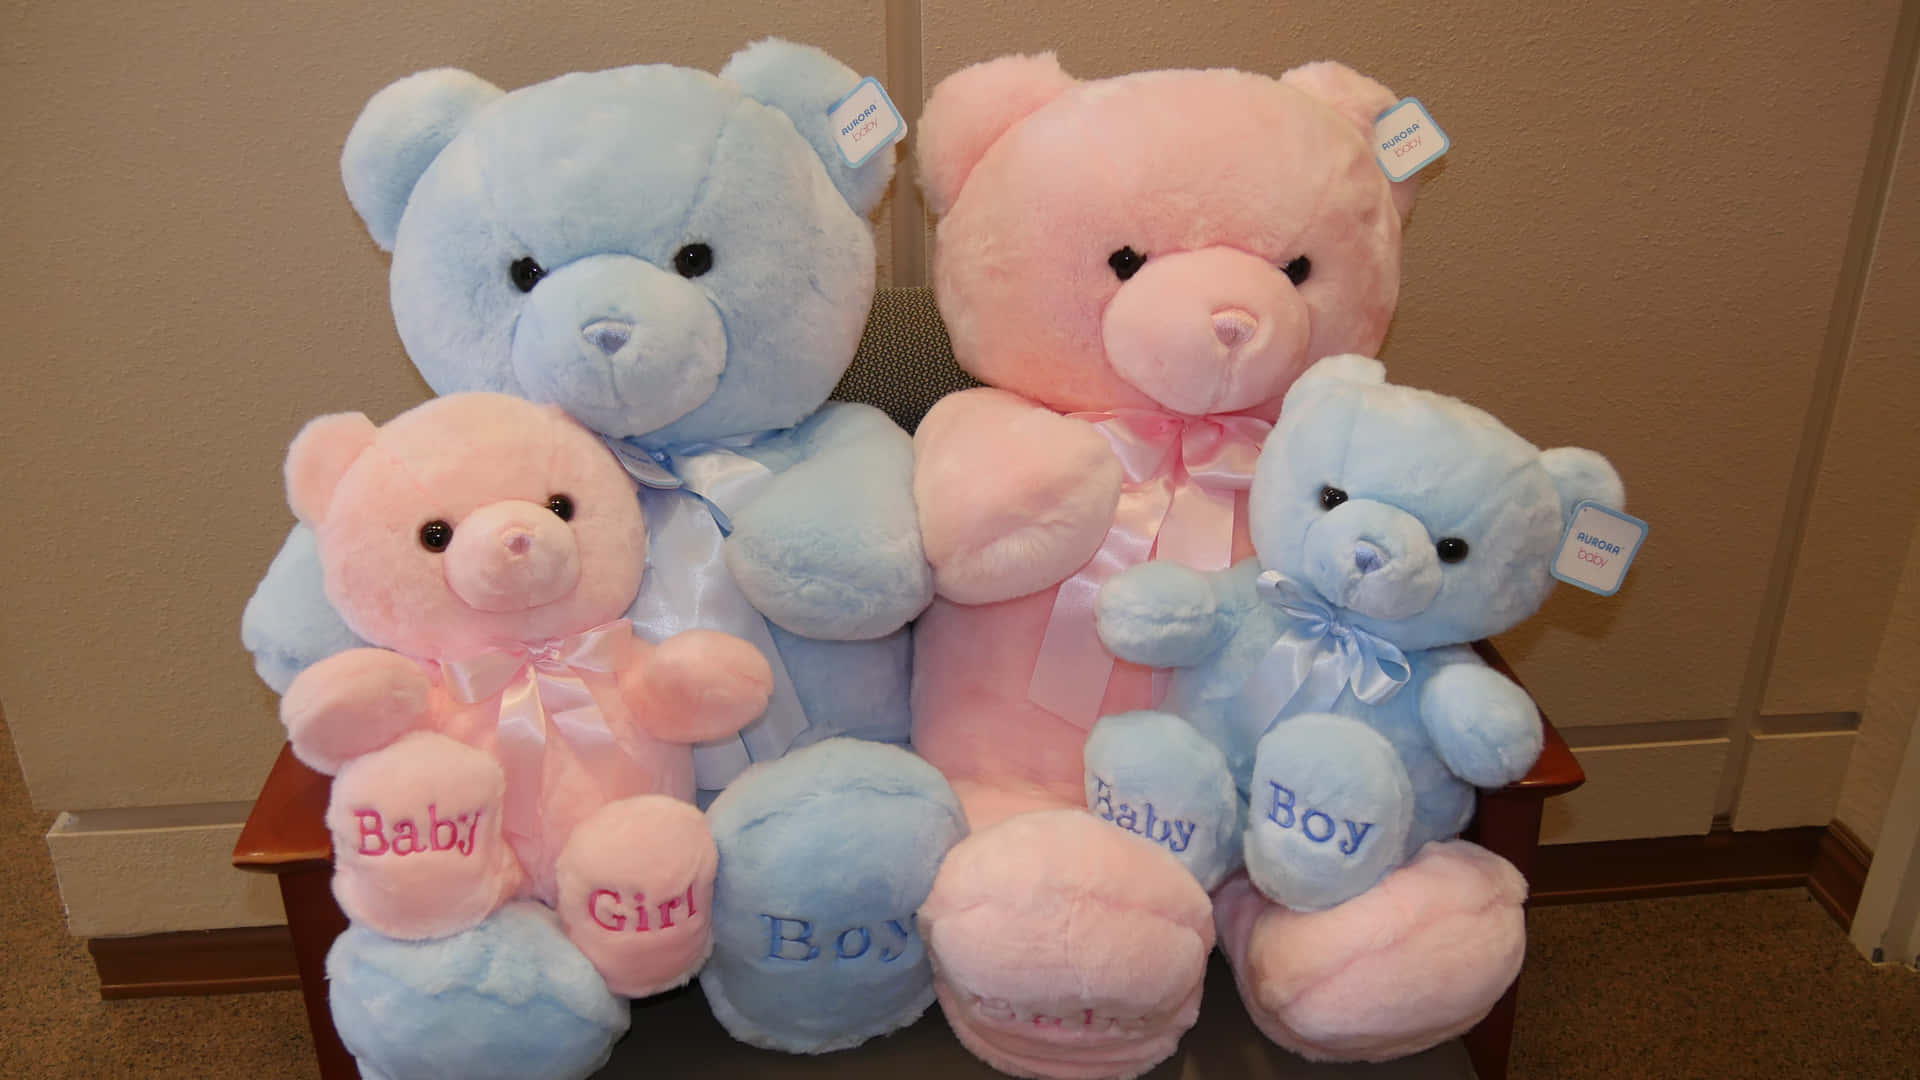 A Group Of Teddy Bears